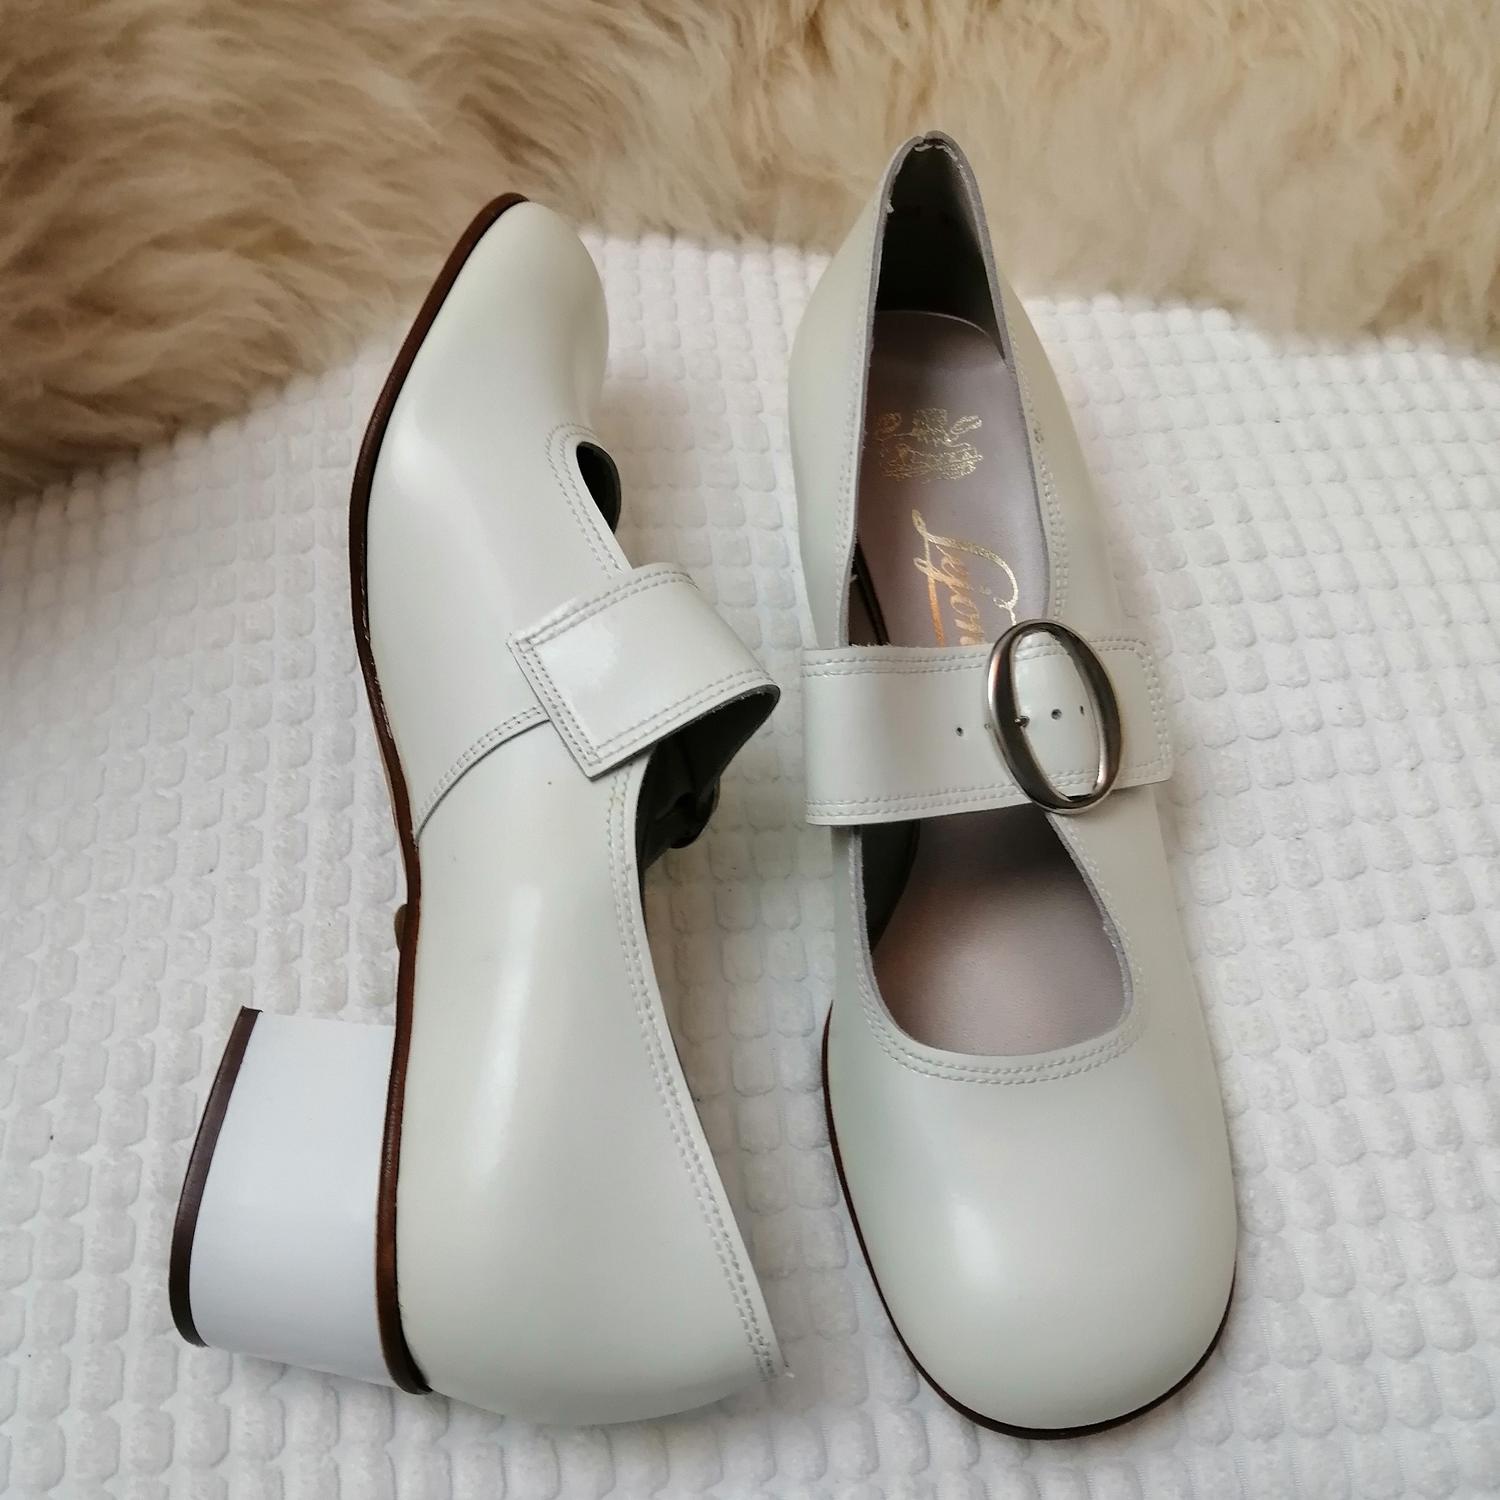 Vintage vit sko rund tå vristrem silverf spänne stl 6,5 ca 40